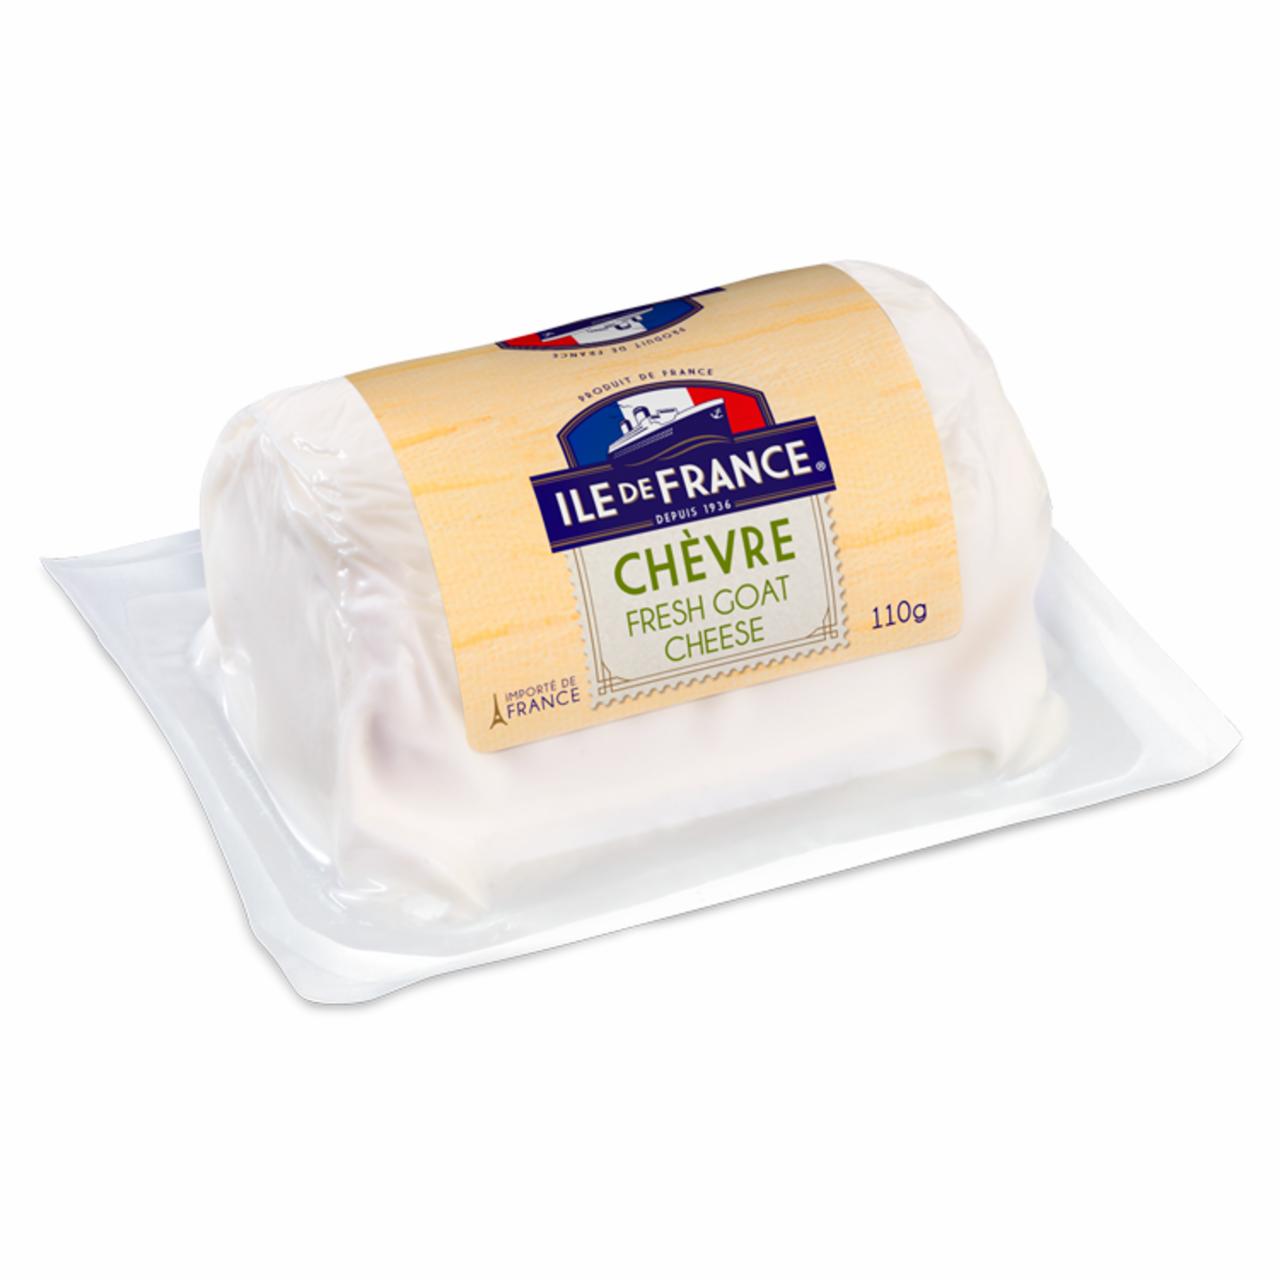 Képek - Ile de France Chèvre félzsíros, friss sajtkészítmény 110 g